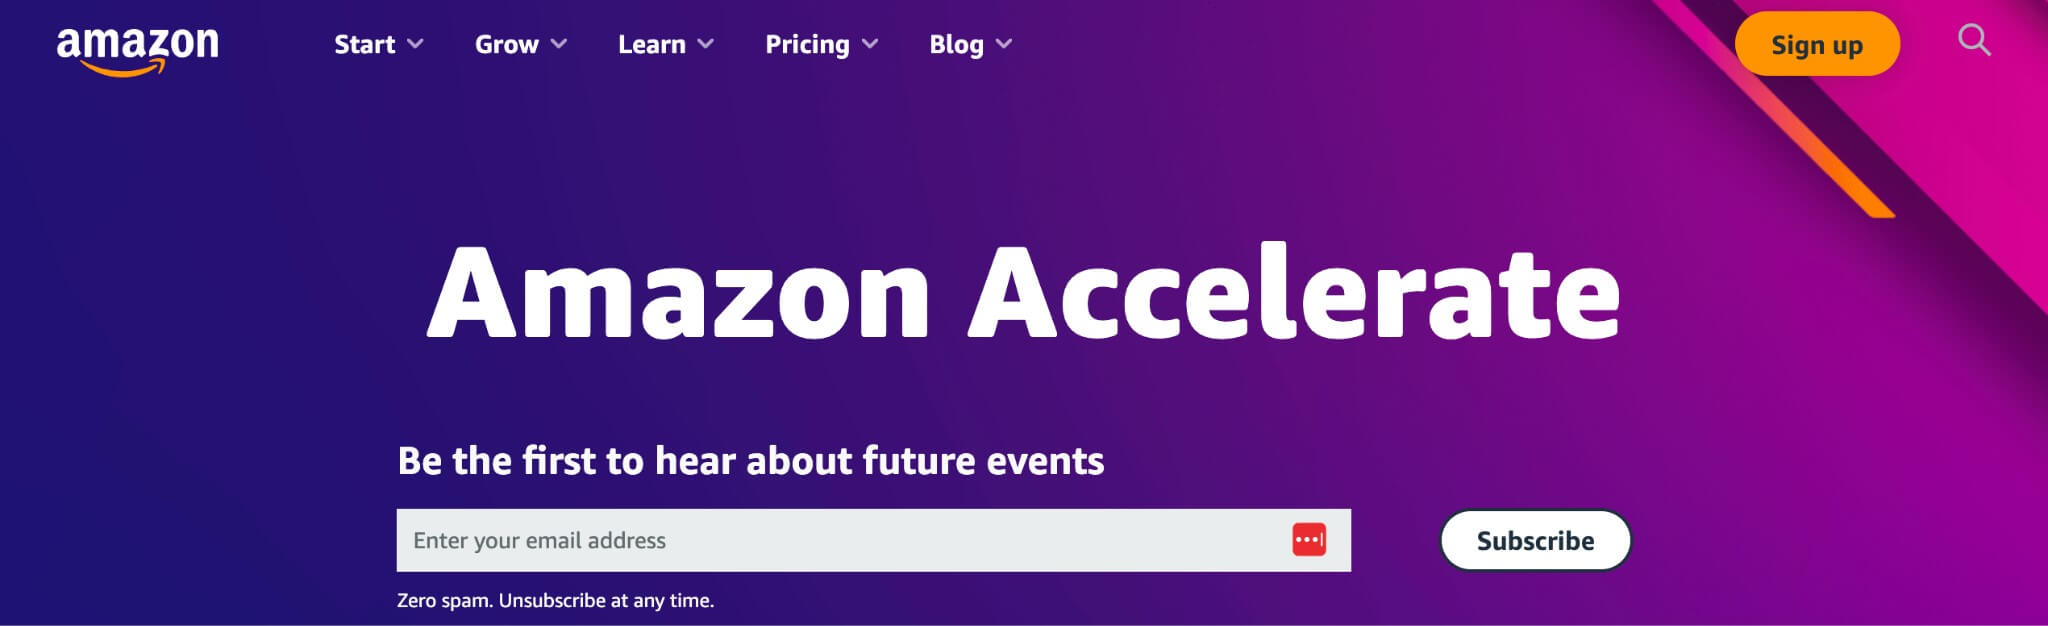 amazon-accelerate-image